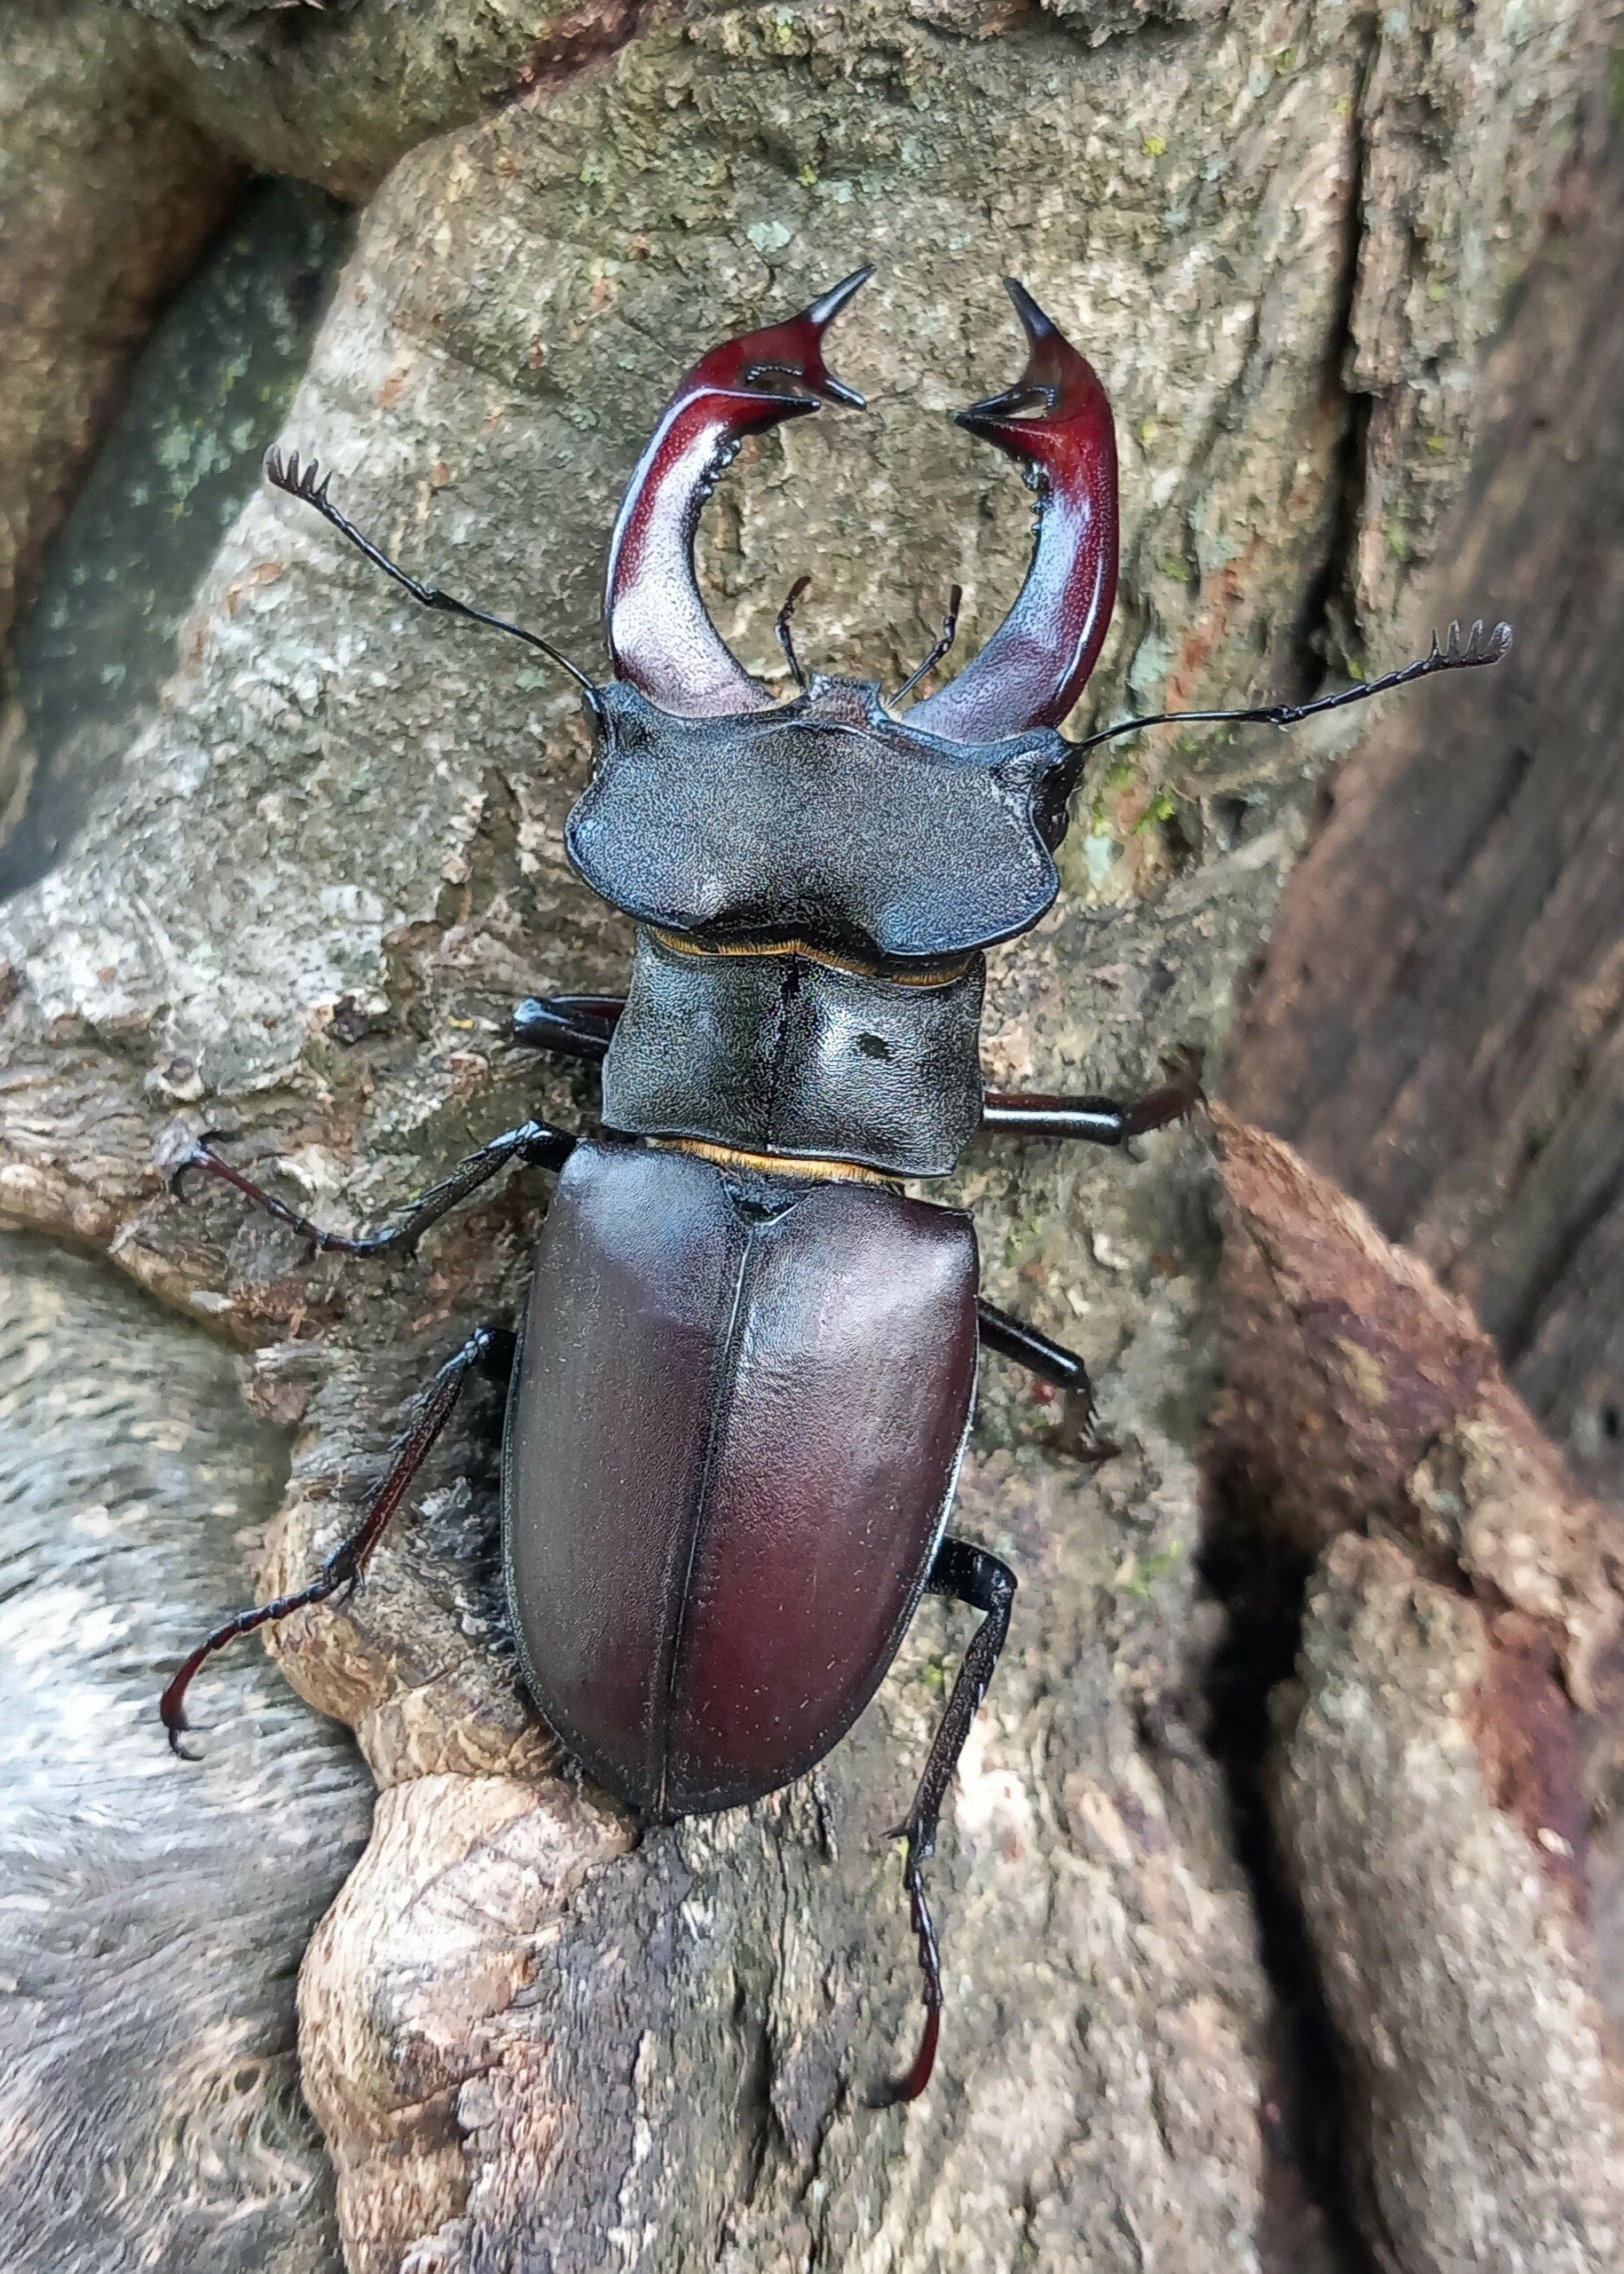 insetto colto in verticale, con le grandi mandibole in evidenza. L'animale ha riflessi color mogano e si trova su un tronco.